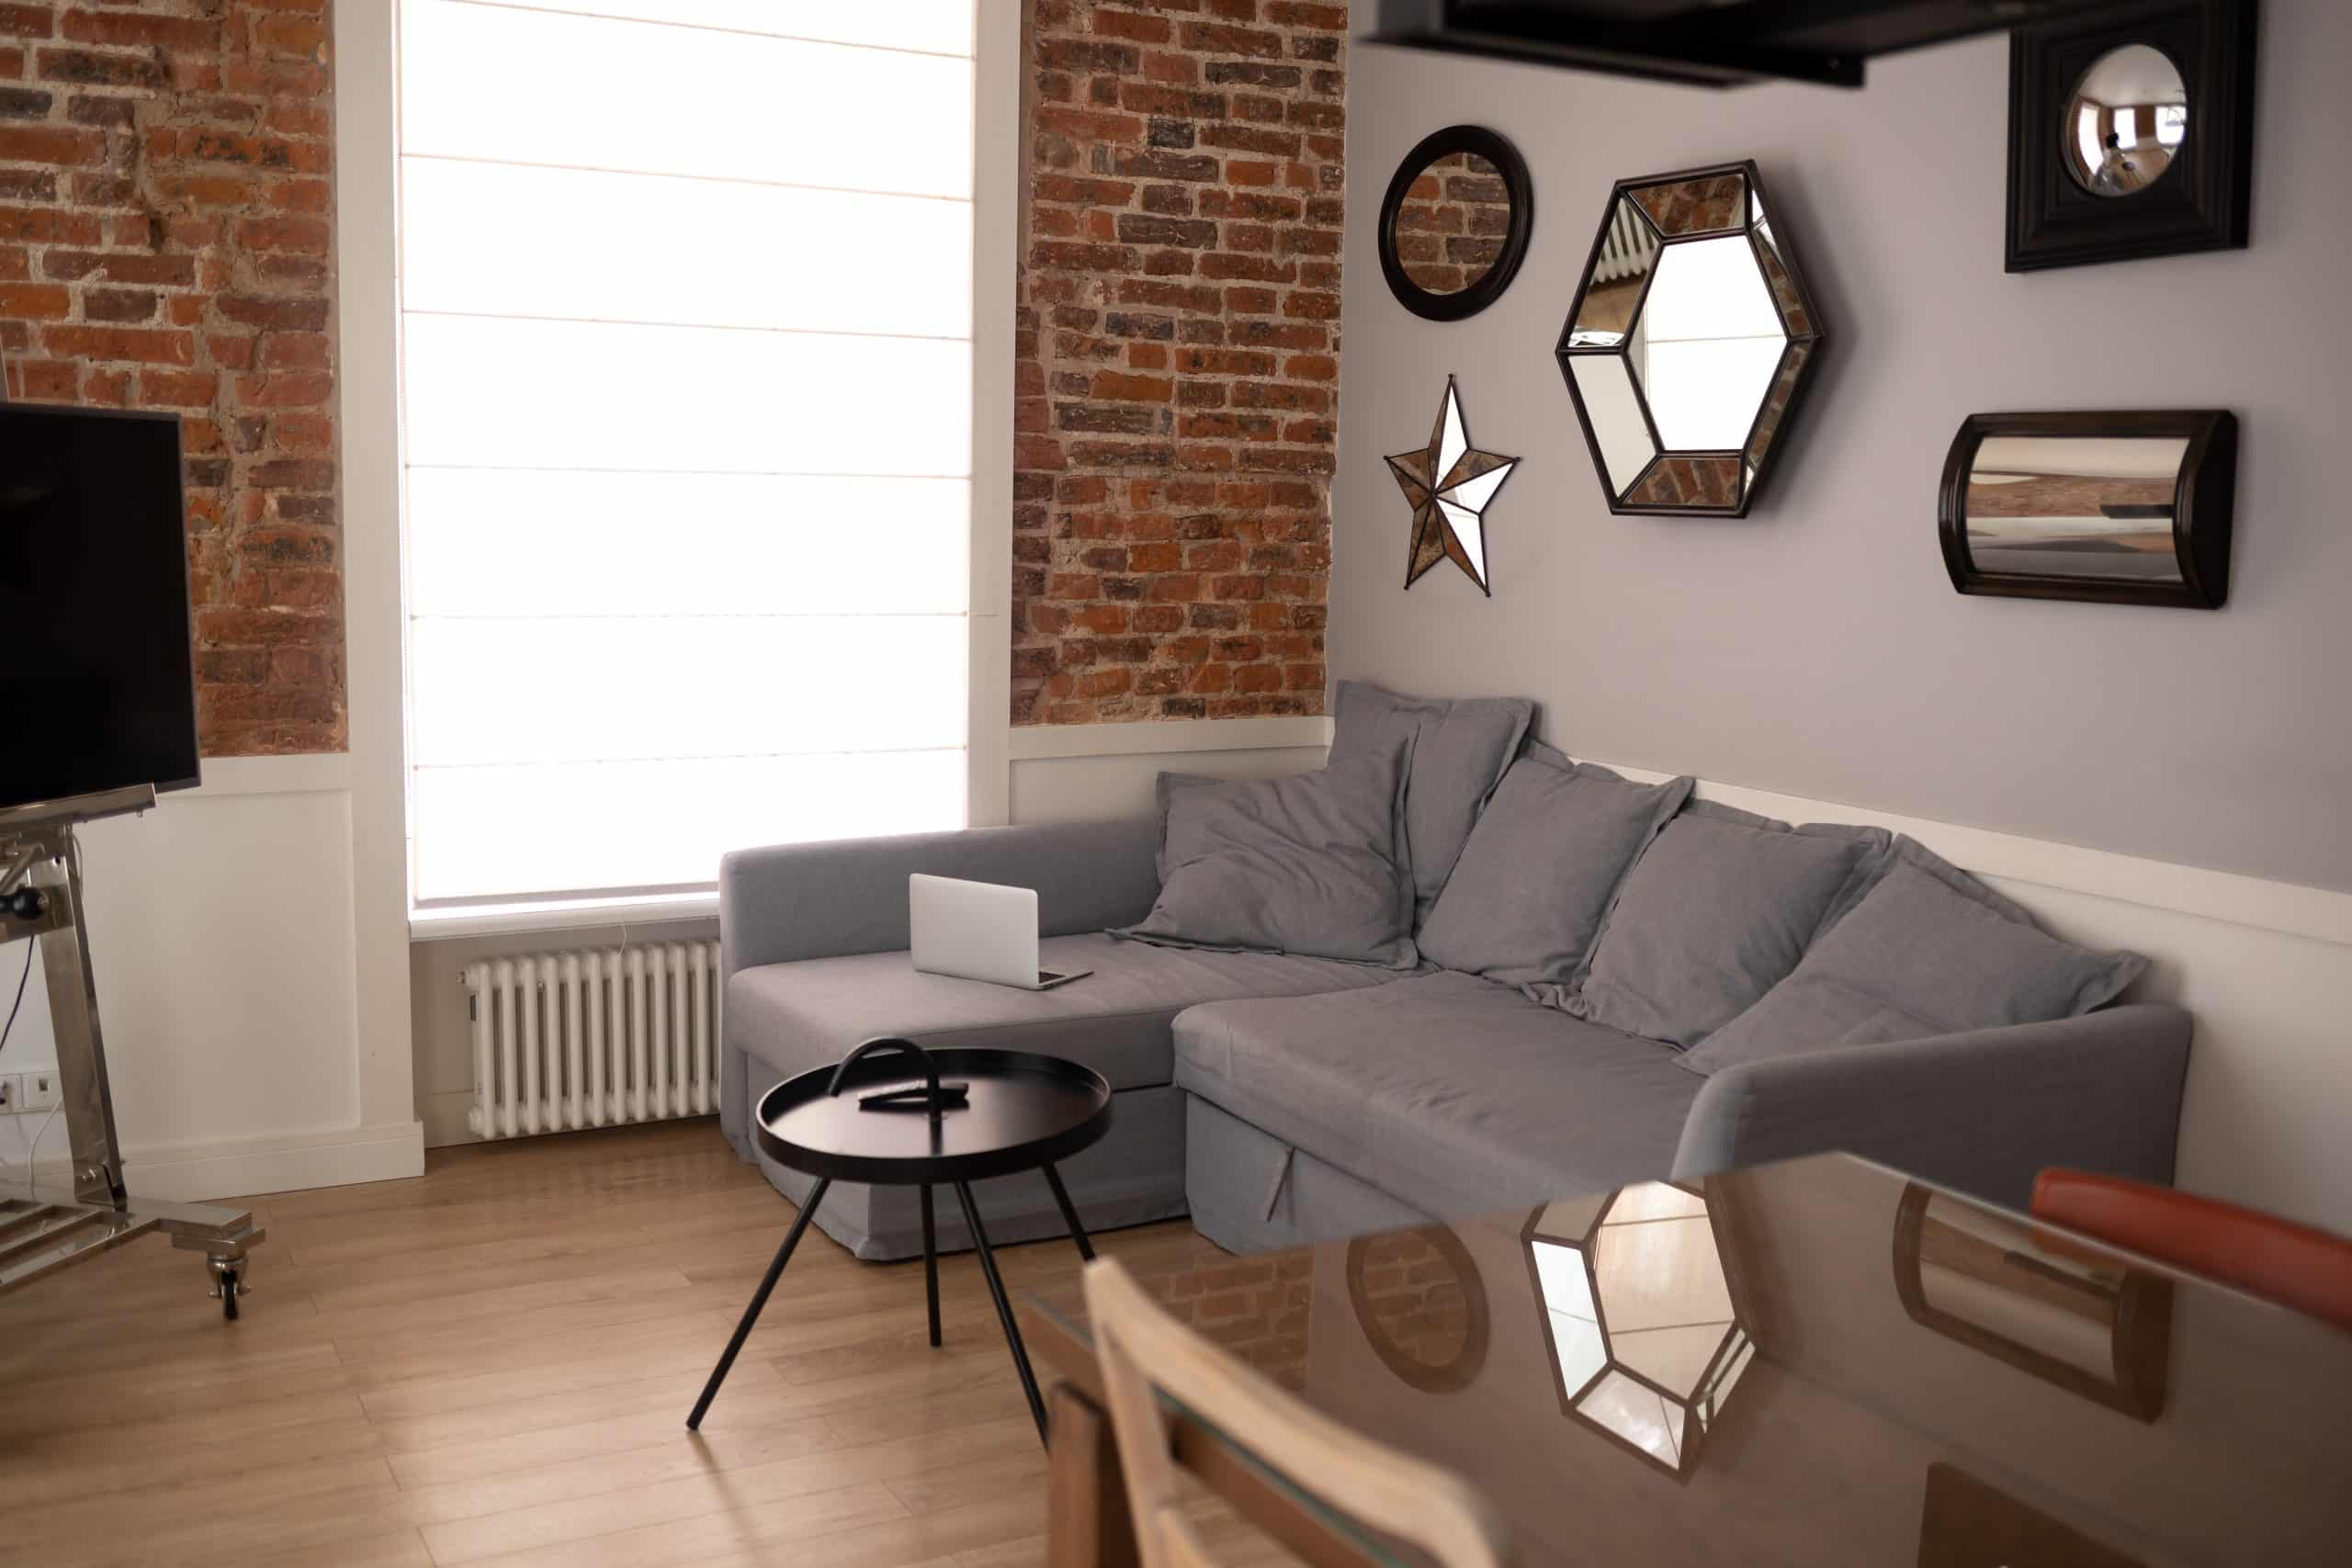 Les atouts des meubles design dans la décoration intérieure : guide complet pour transformer votre intérieur avec goût